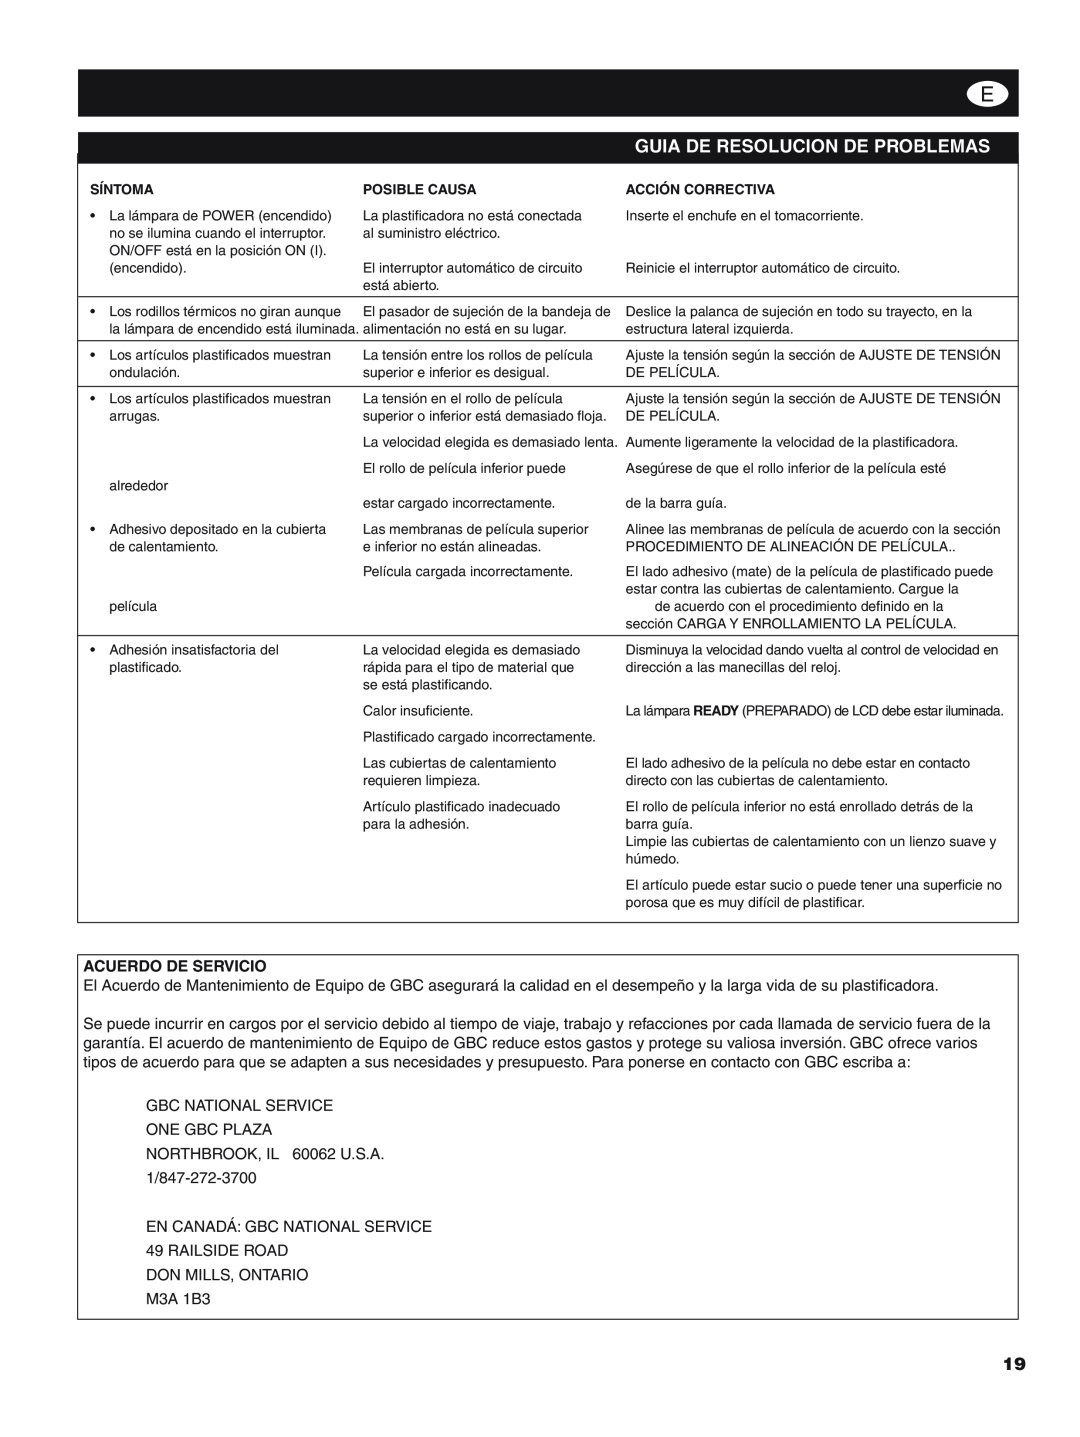 GBC H800 PRO-R manual Guia De Resolucion De Problemas, Acuerdo De Servicio, Síntoma, Posible Causa, Acción Correctiva 